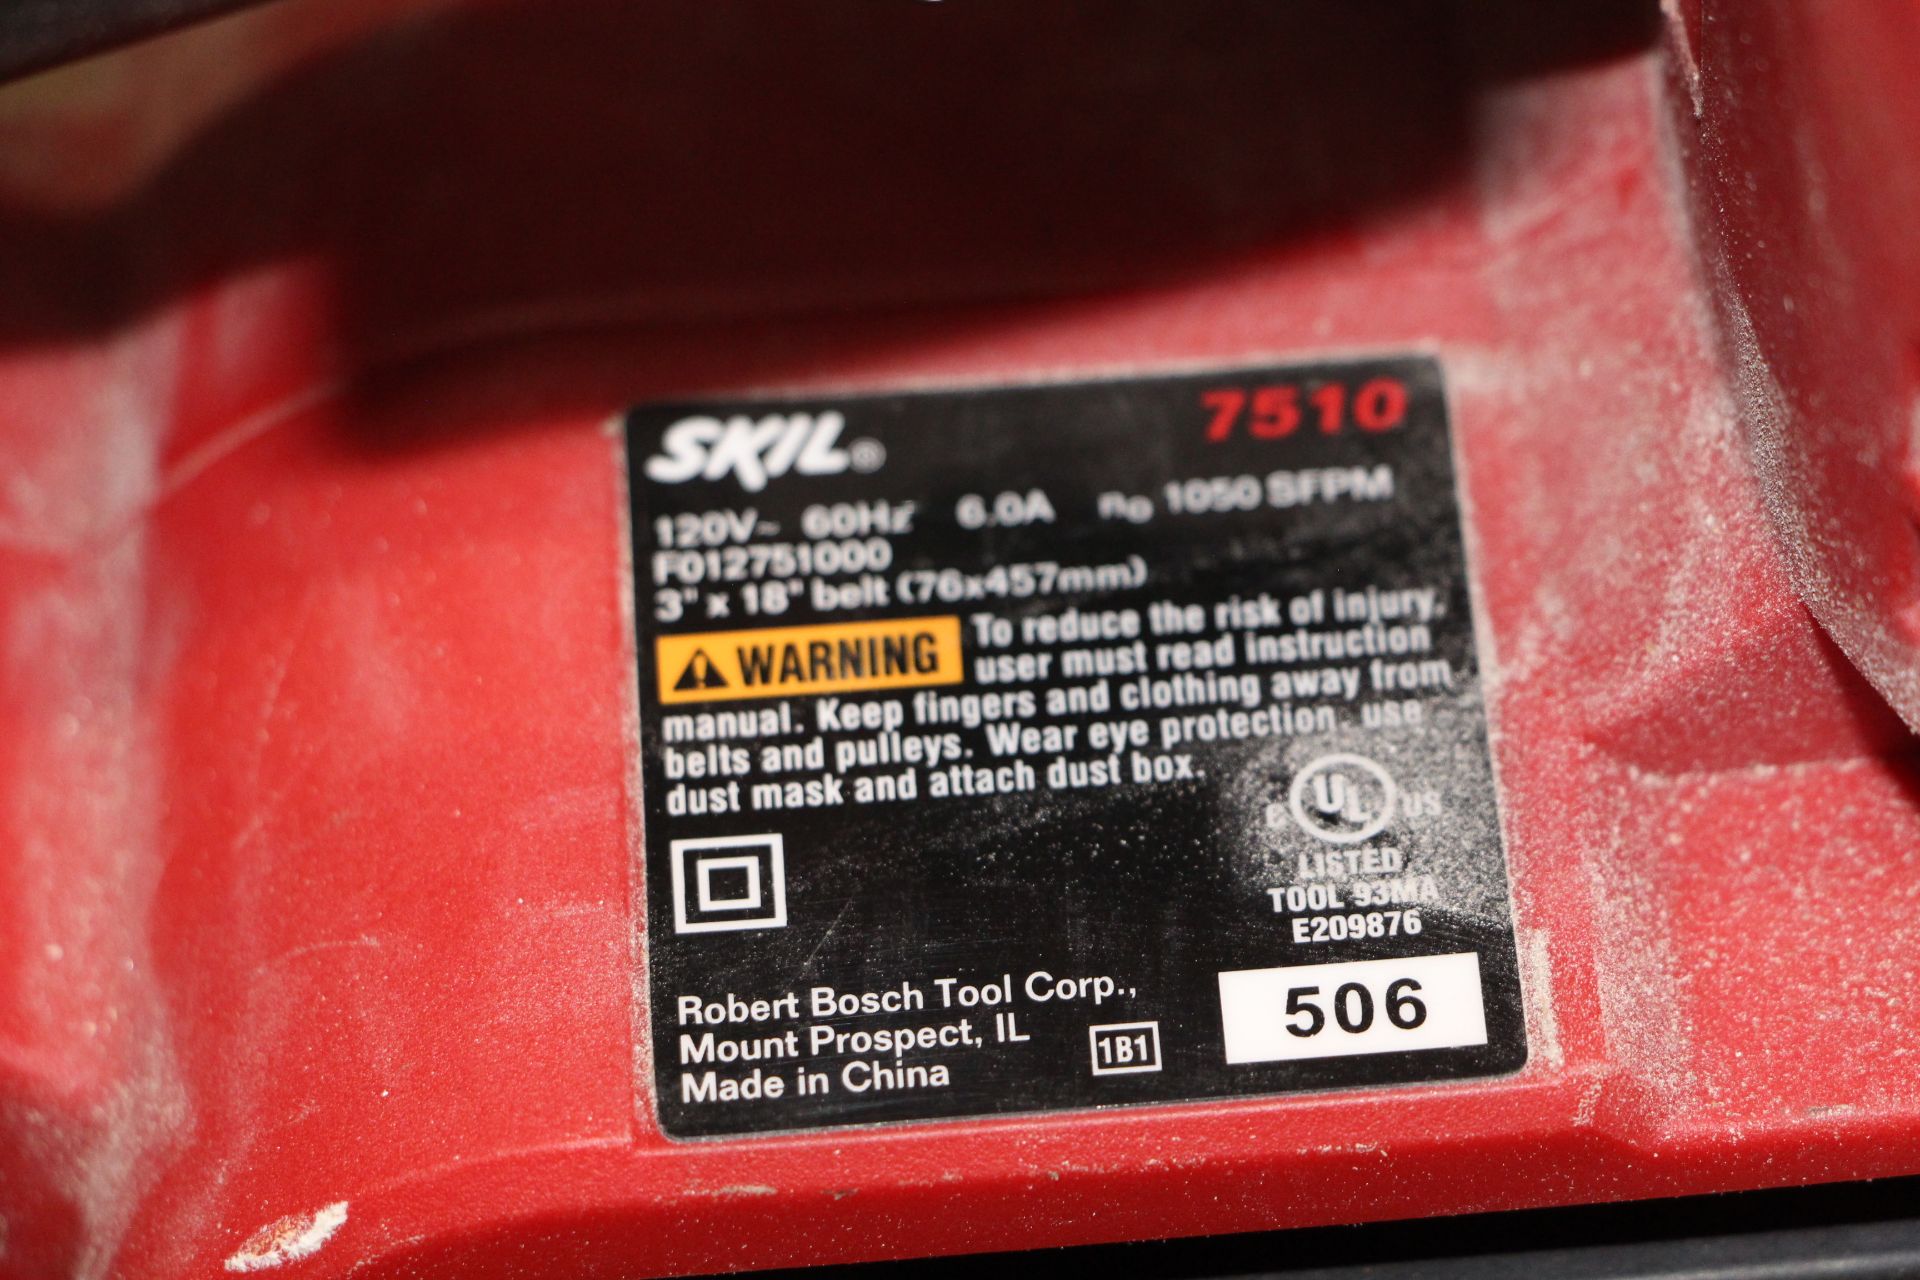 Skil 7510 electric belt sander - Image 2 of 2